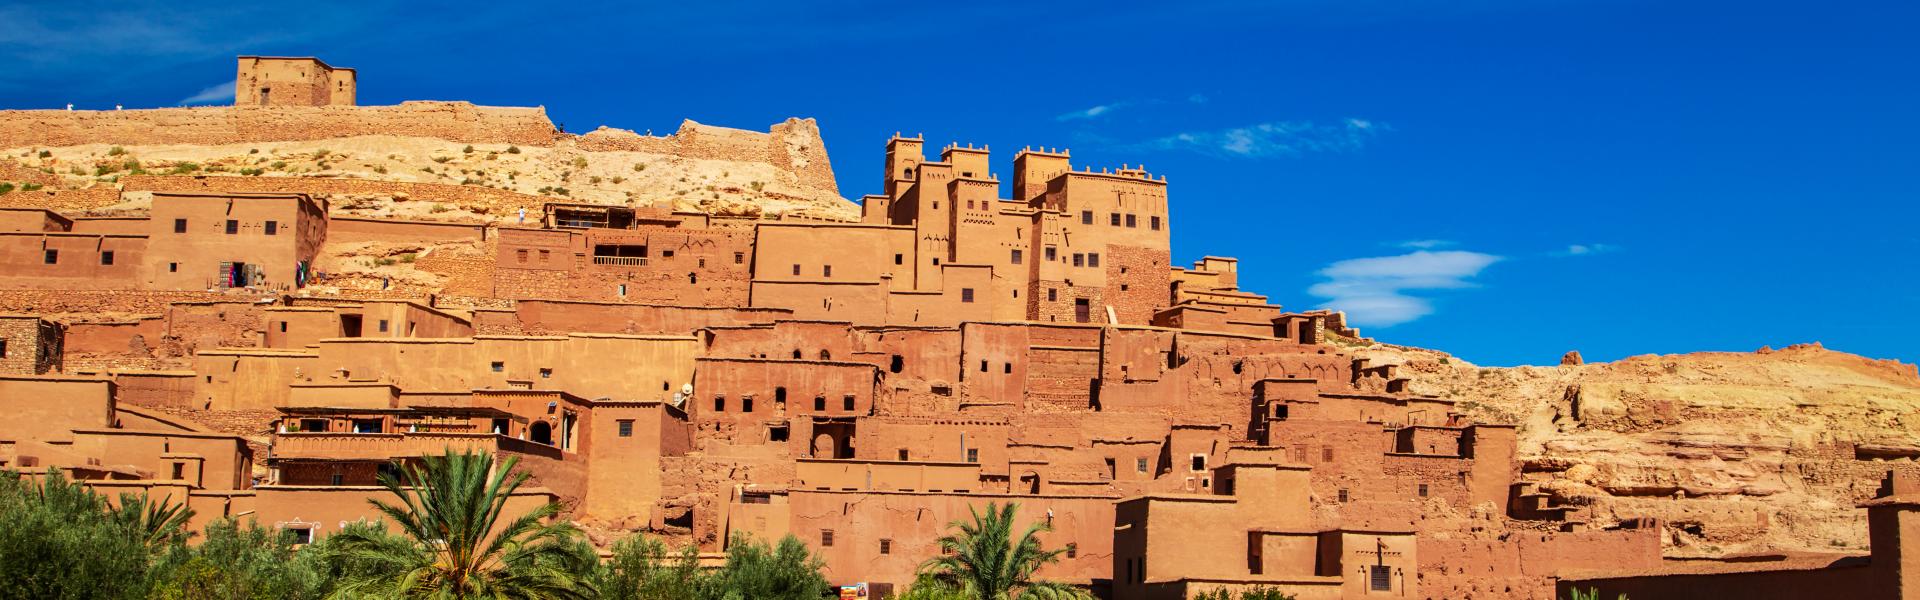 Noclegi i apartamenty wakacyjne w Maroku - Casamundo